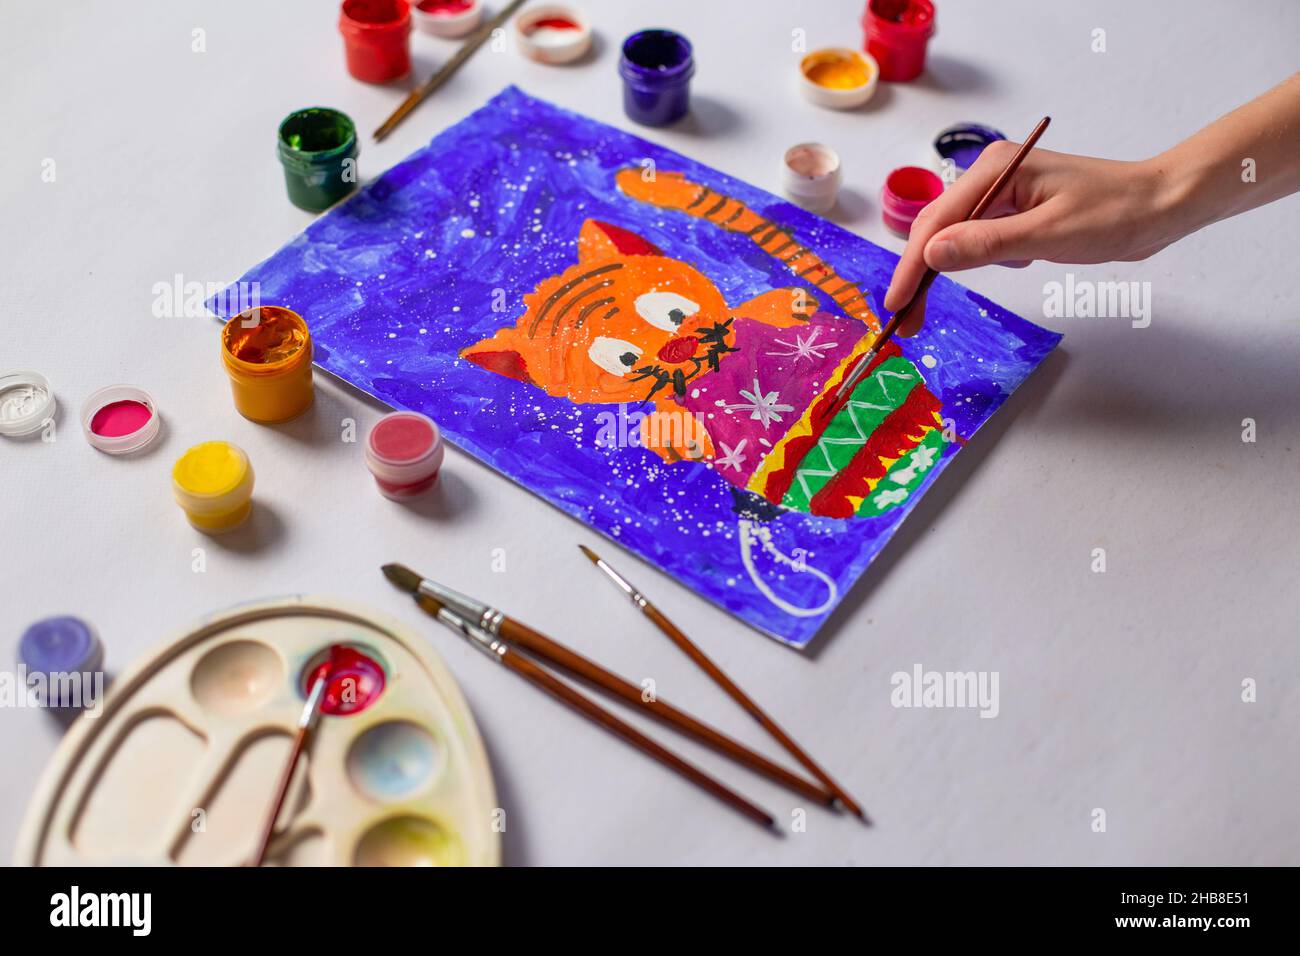 Un enfant peint un chat et un jouet d'arbre de Noël avec des peintures.Enfants noël dessin gros plan Banque D'Images